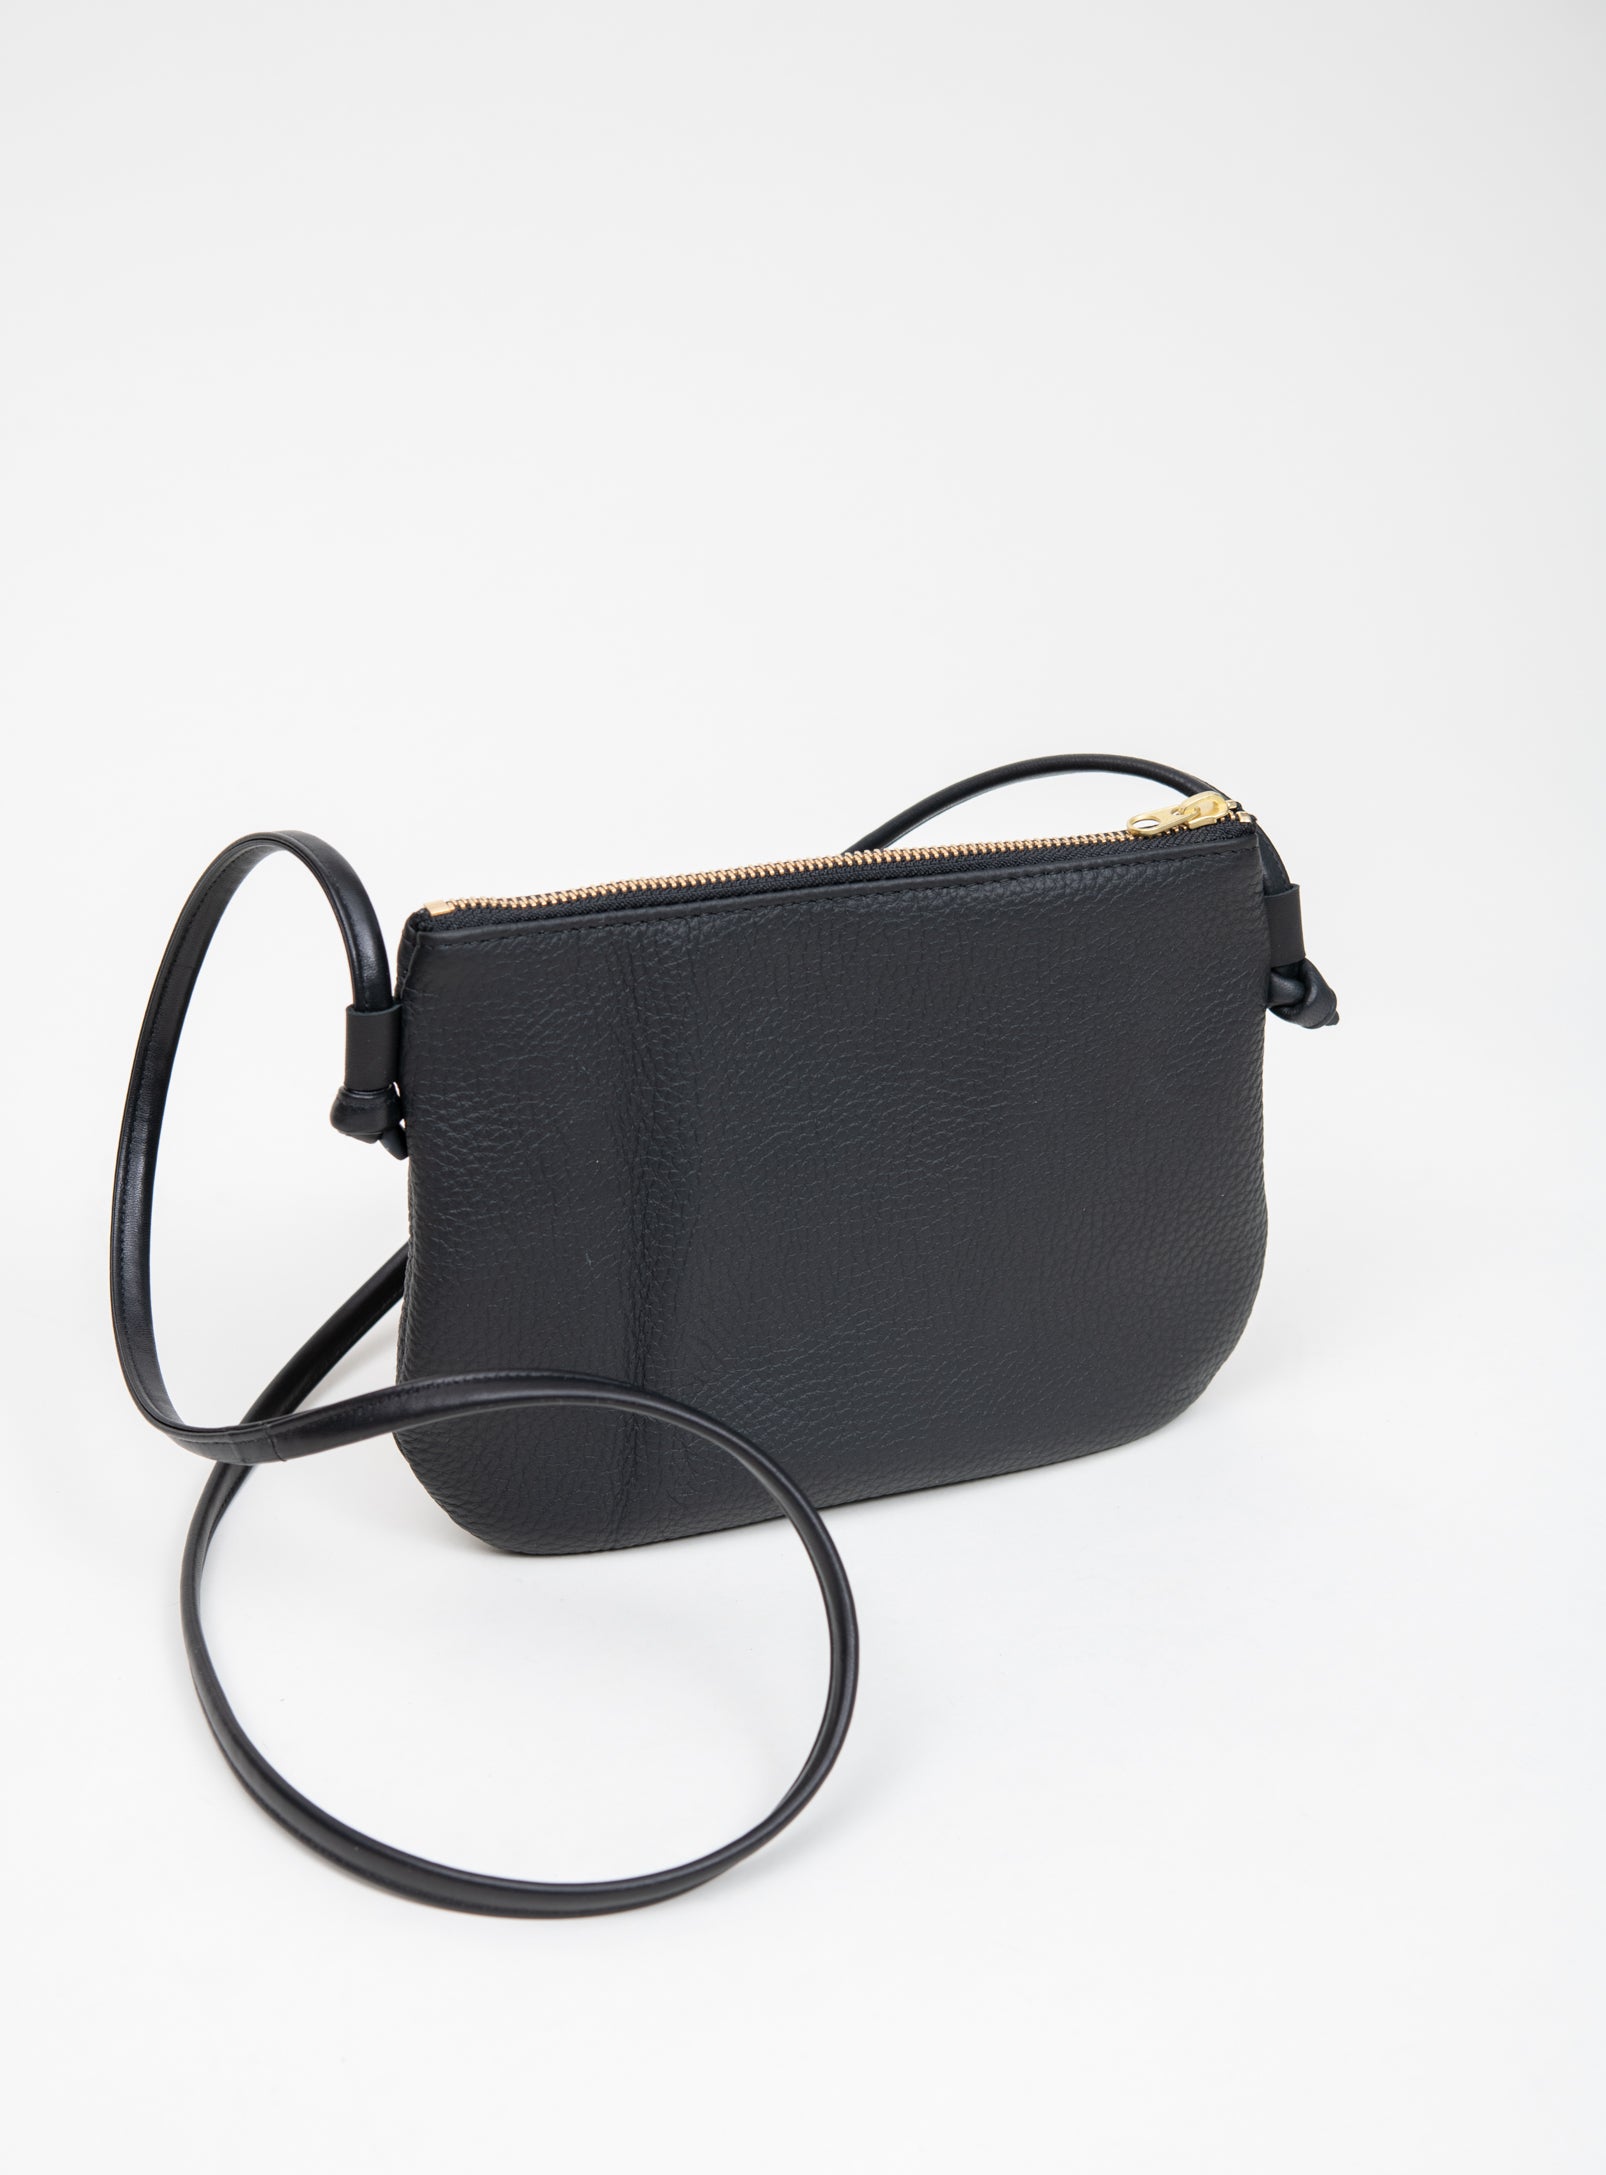 OFFER Leather BAG Crossbody Bag Shoulder Bag Convertible Bag Leather Purse  Adjustable Strap Zipper Closure LUCI Model in Black Leather - Etsy Canada |  Leather, Bags, Black leather bags